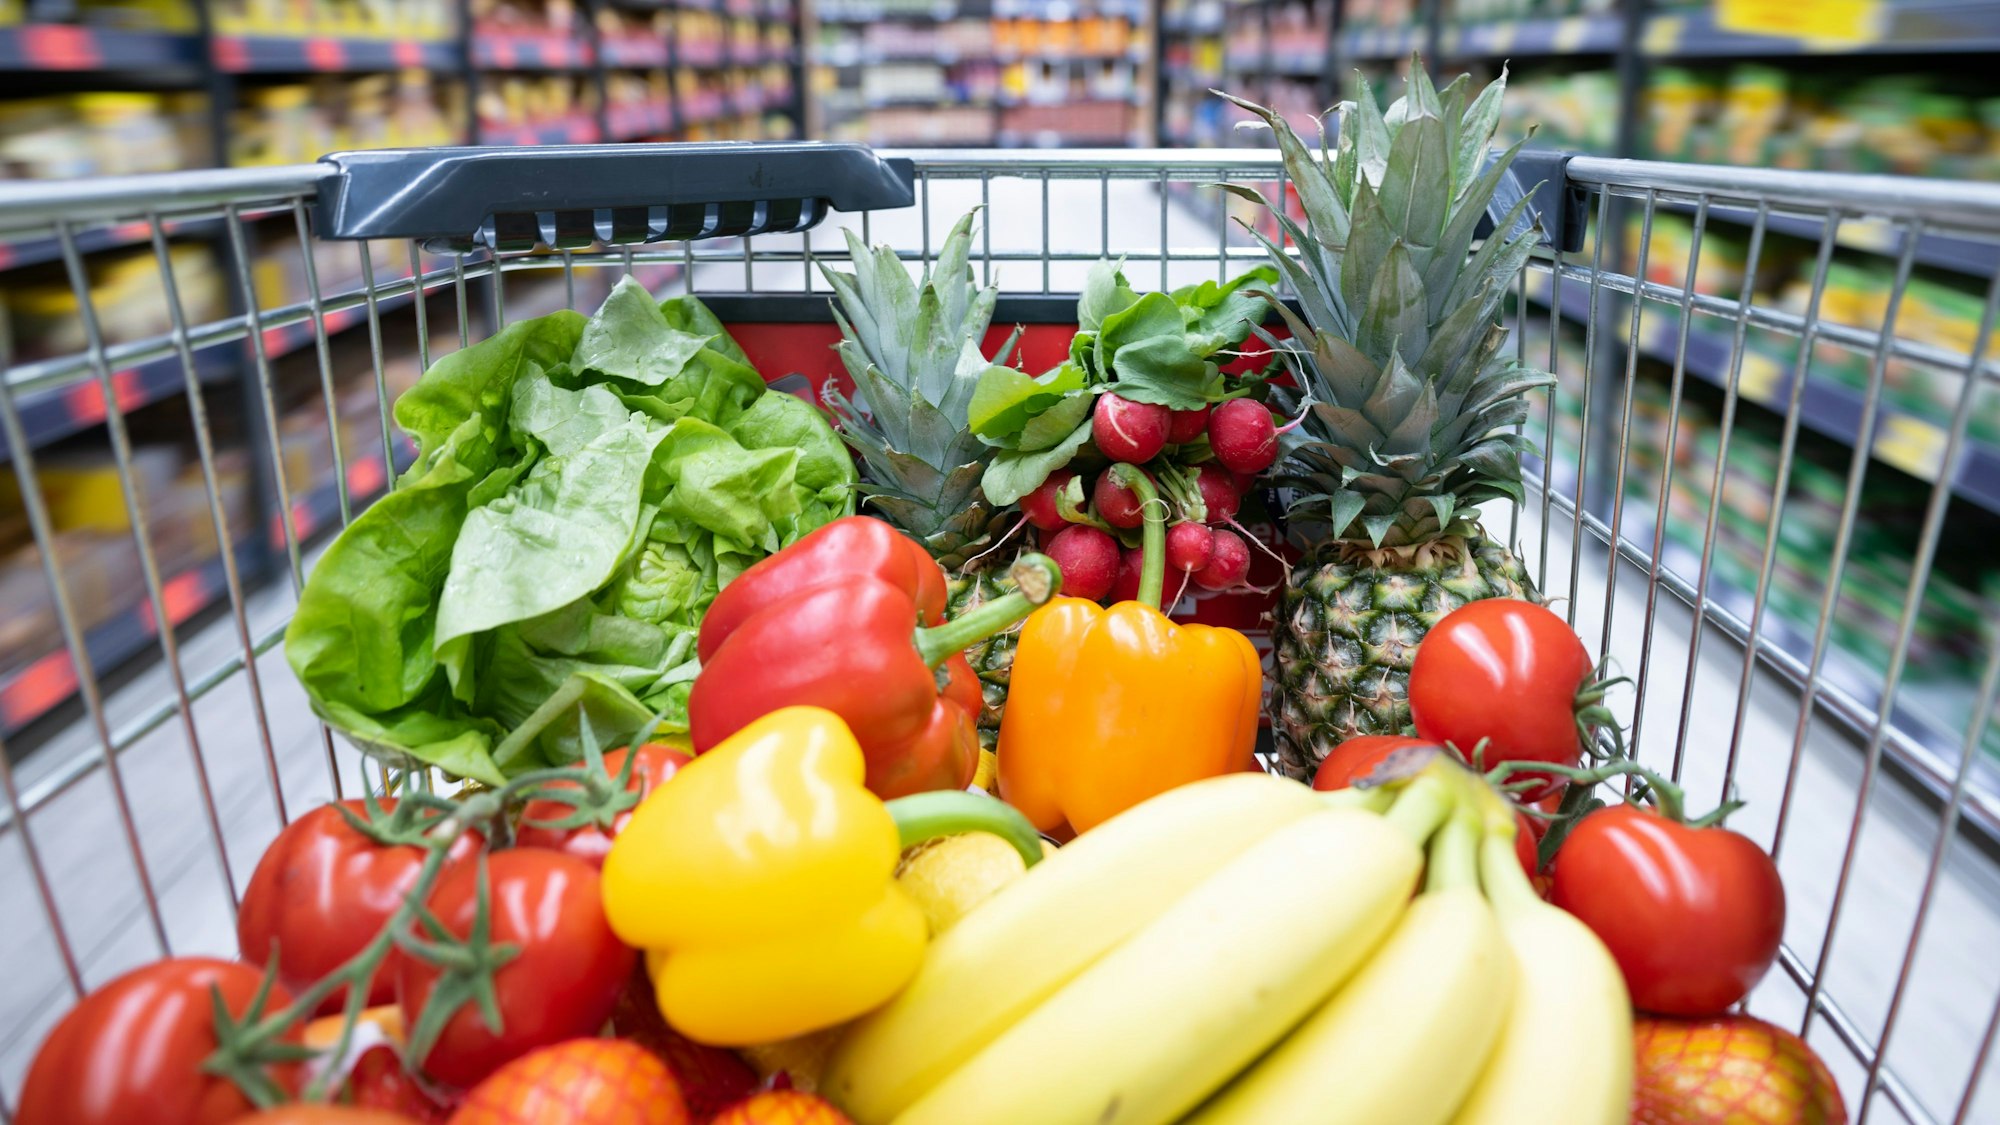 Ein Einkaufskorb mit Obst und Gemüse steht in einem Supermarkt. Der kräftige Anstieg der Lebensmittelpreise in den vergangenen Monaten ist nach Einschätzung des Kreditversicherers Allianz-Trade nicht nur auf die gestiegenen Rohstoffkosten und Energiepreise zurückzuführen.